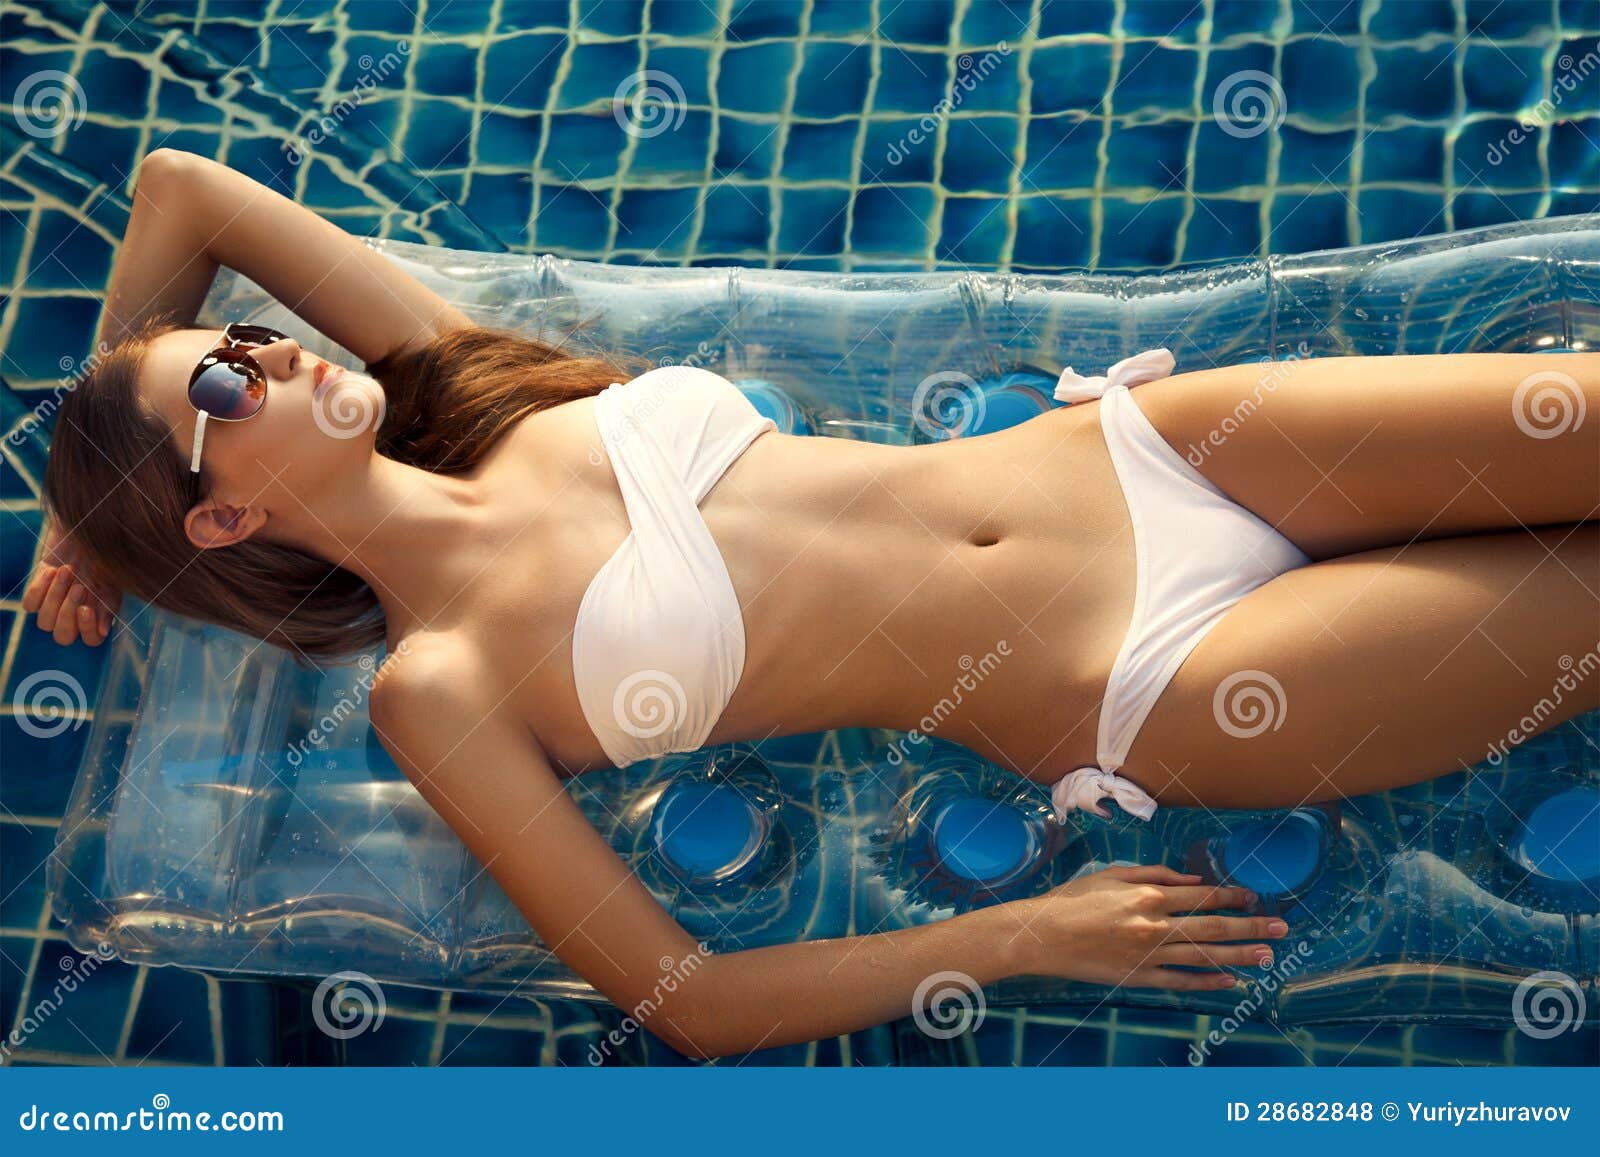 beautiful woman sunbathing in swimming pool